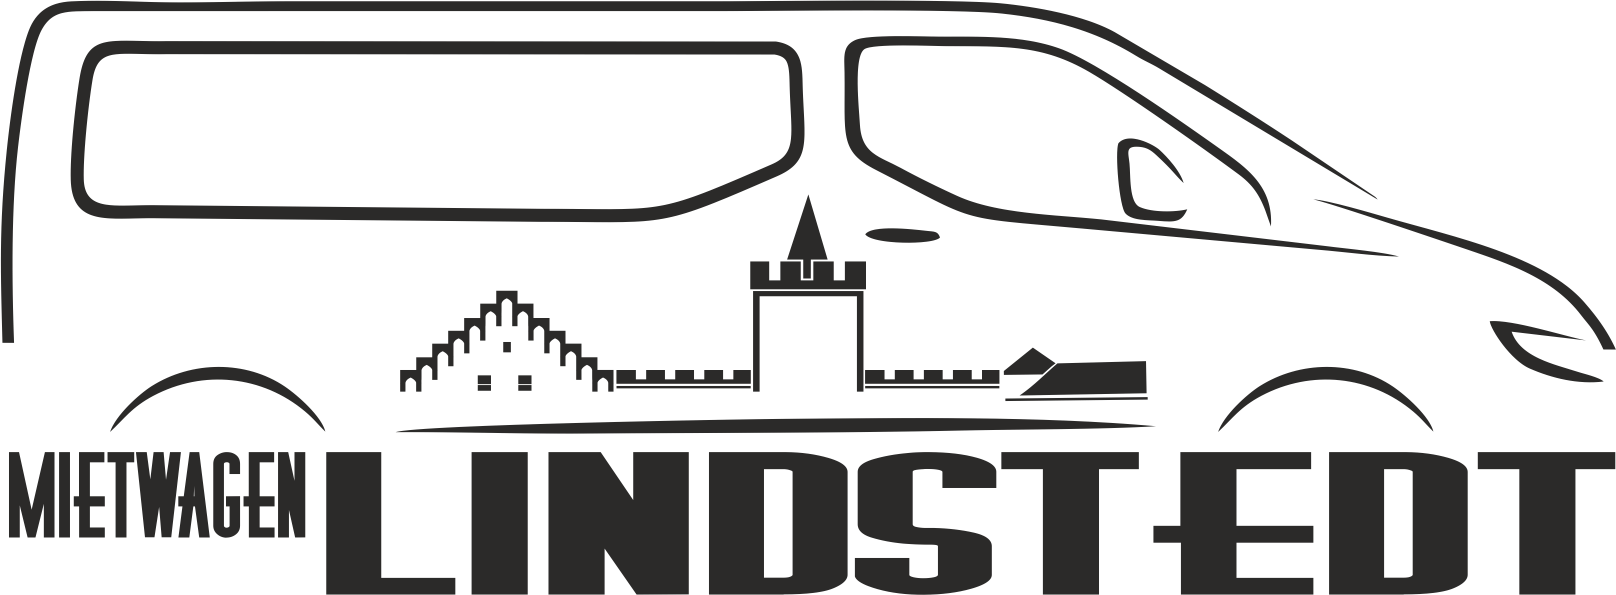 Logo der Firma Mietwagen Lindstedt aus Zerbst/Anhalt